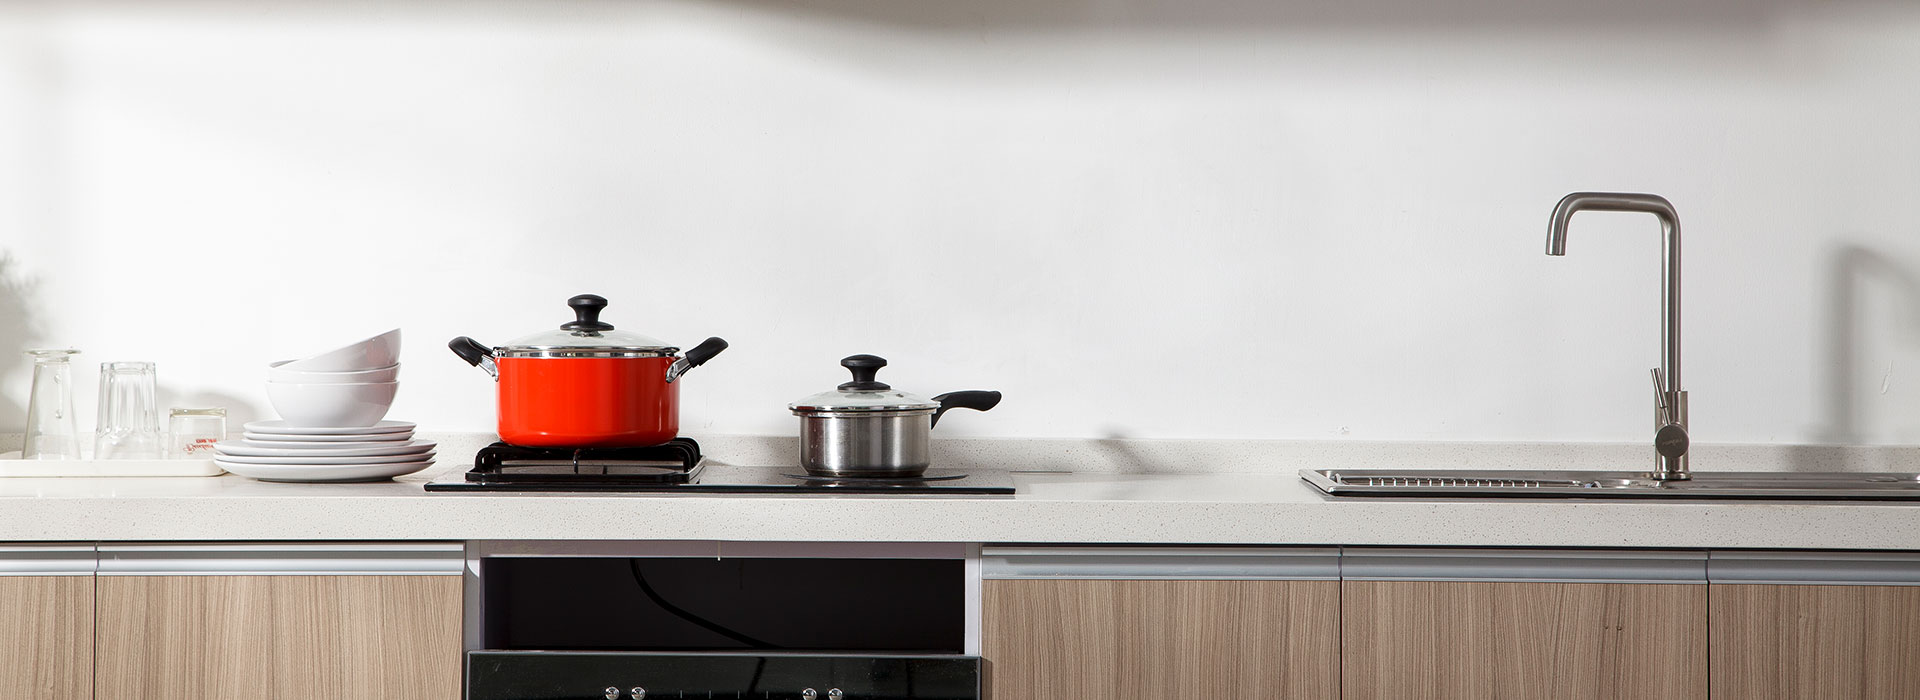 芬尼空气能热水器的铂金型300Lplus厨房免费冷气